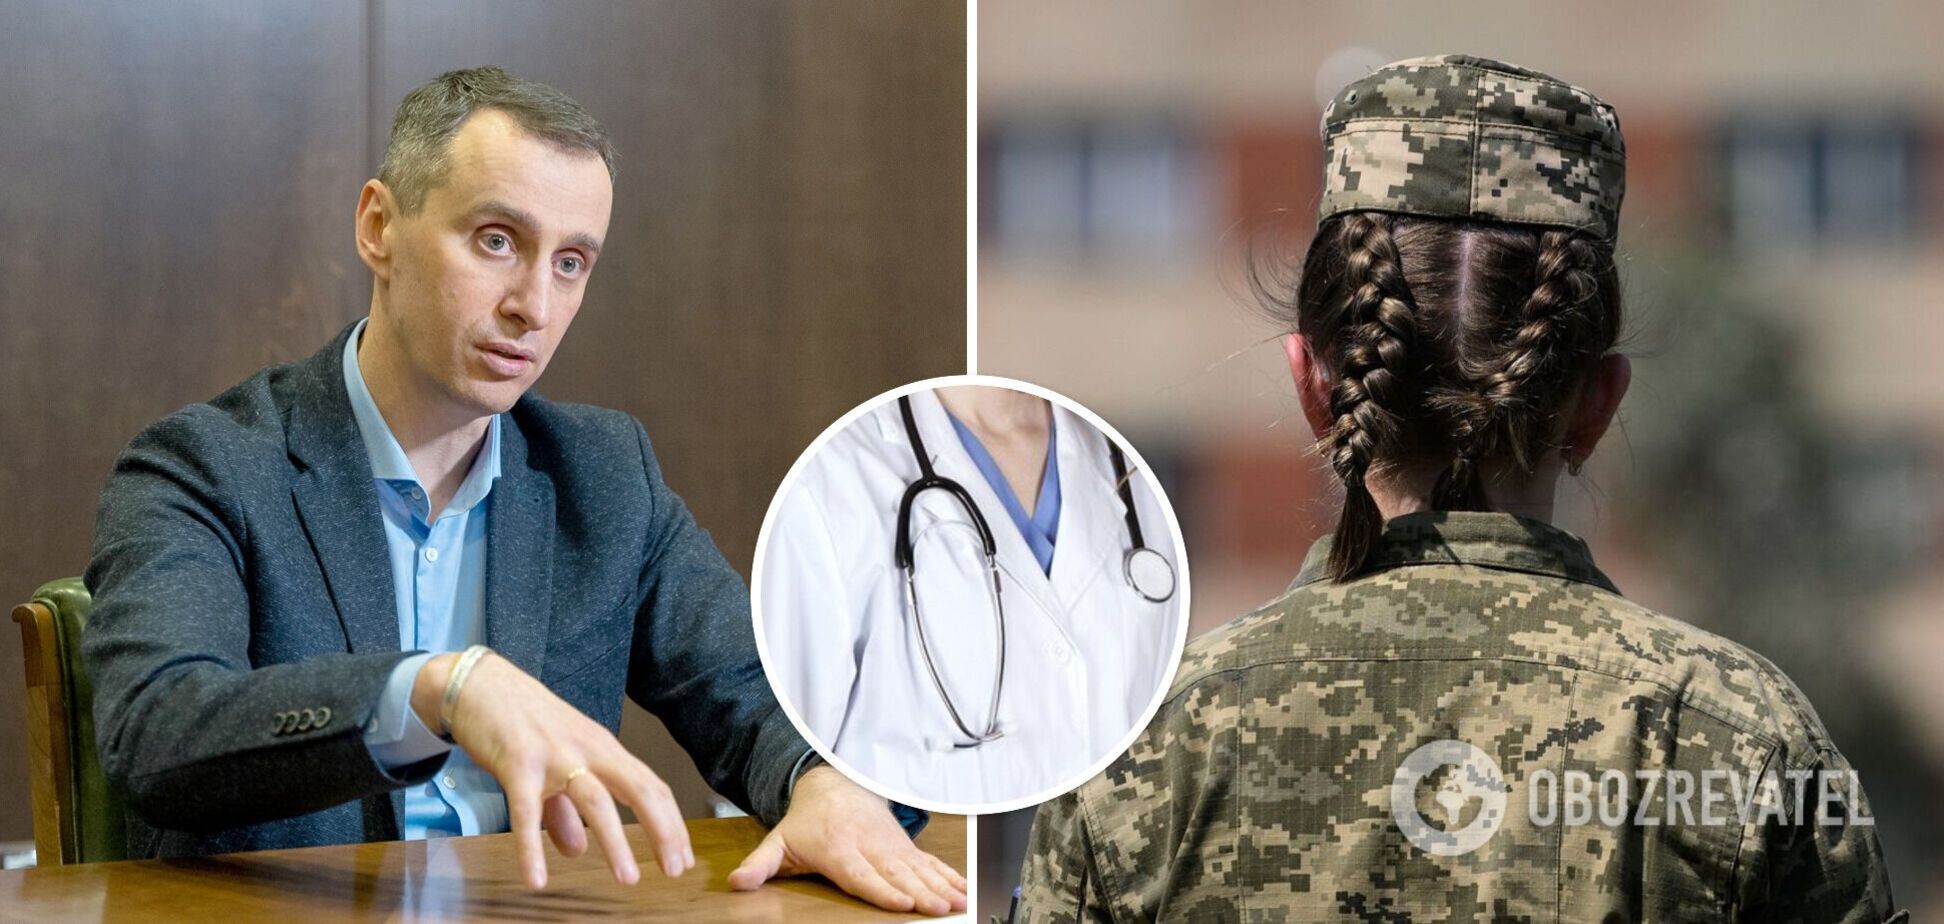 Військовий облік жінок-медиків